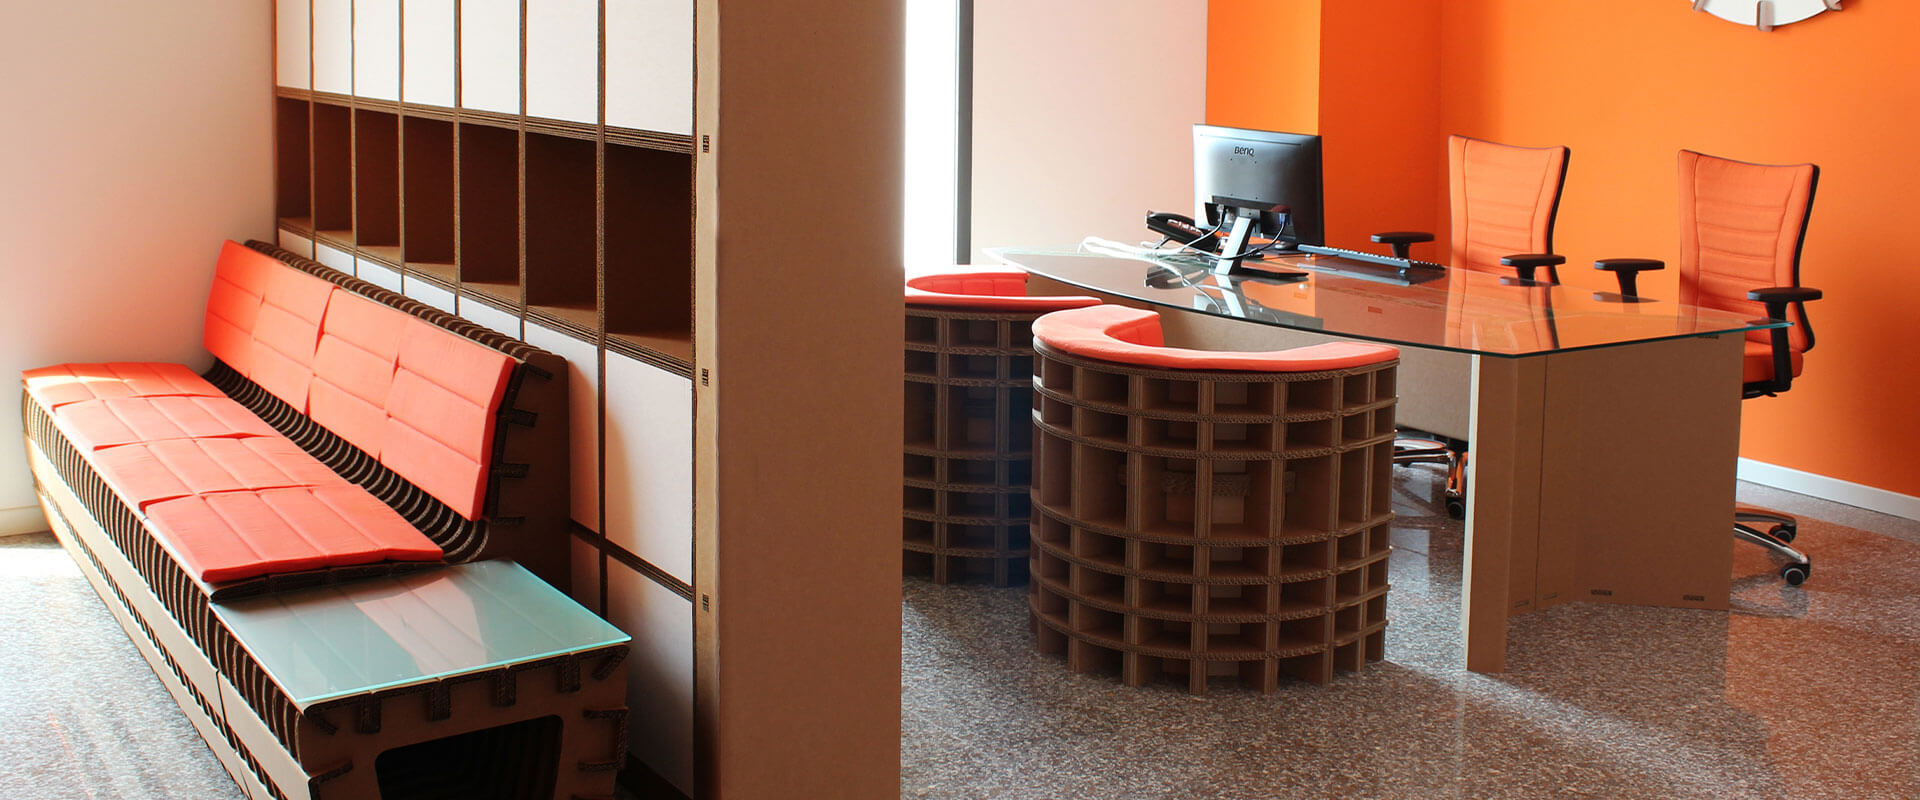 Arredo ecologico per l'ufficio: scrivanie, poltrone e mobili in cartone